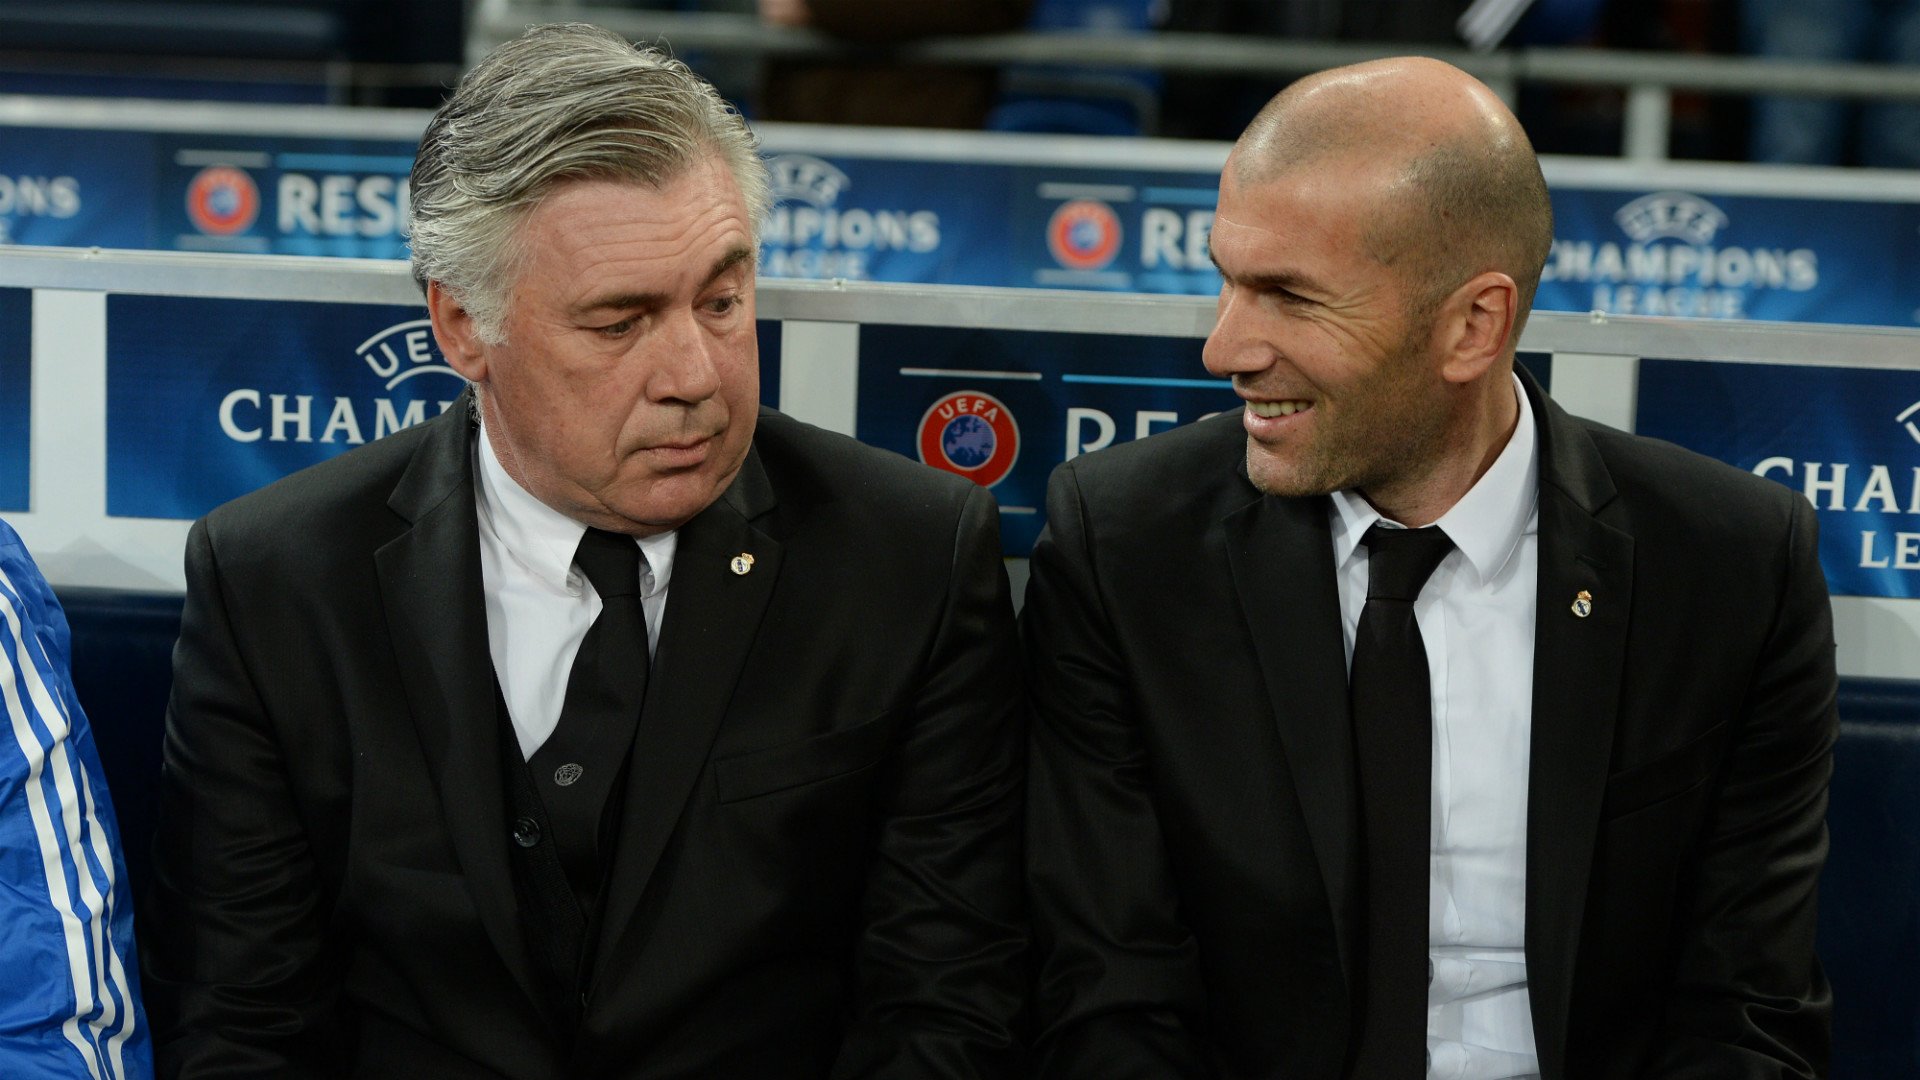 Rebutja el Reial Madrid per negociar amb la Juventus perquè Ancelotti no és Zidane